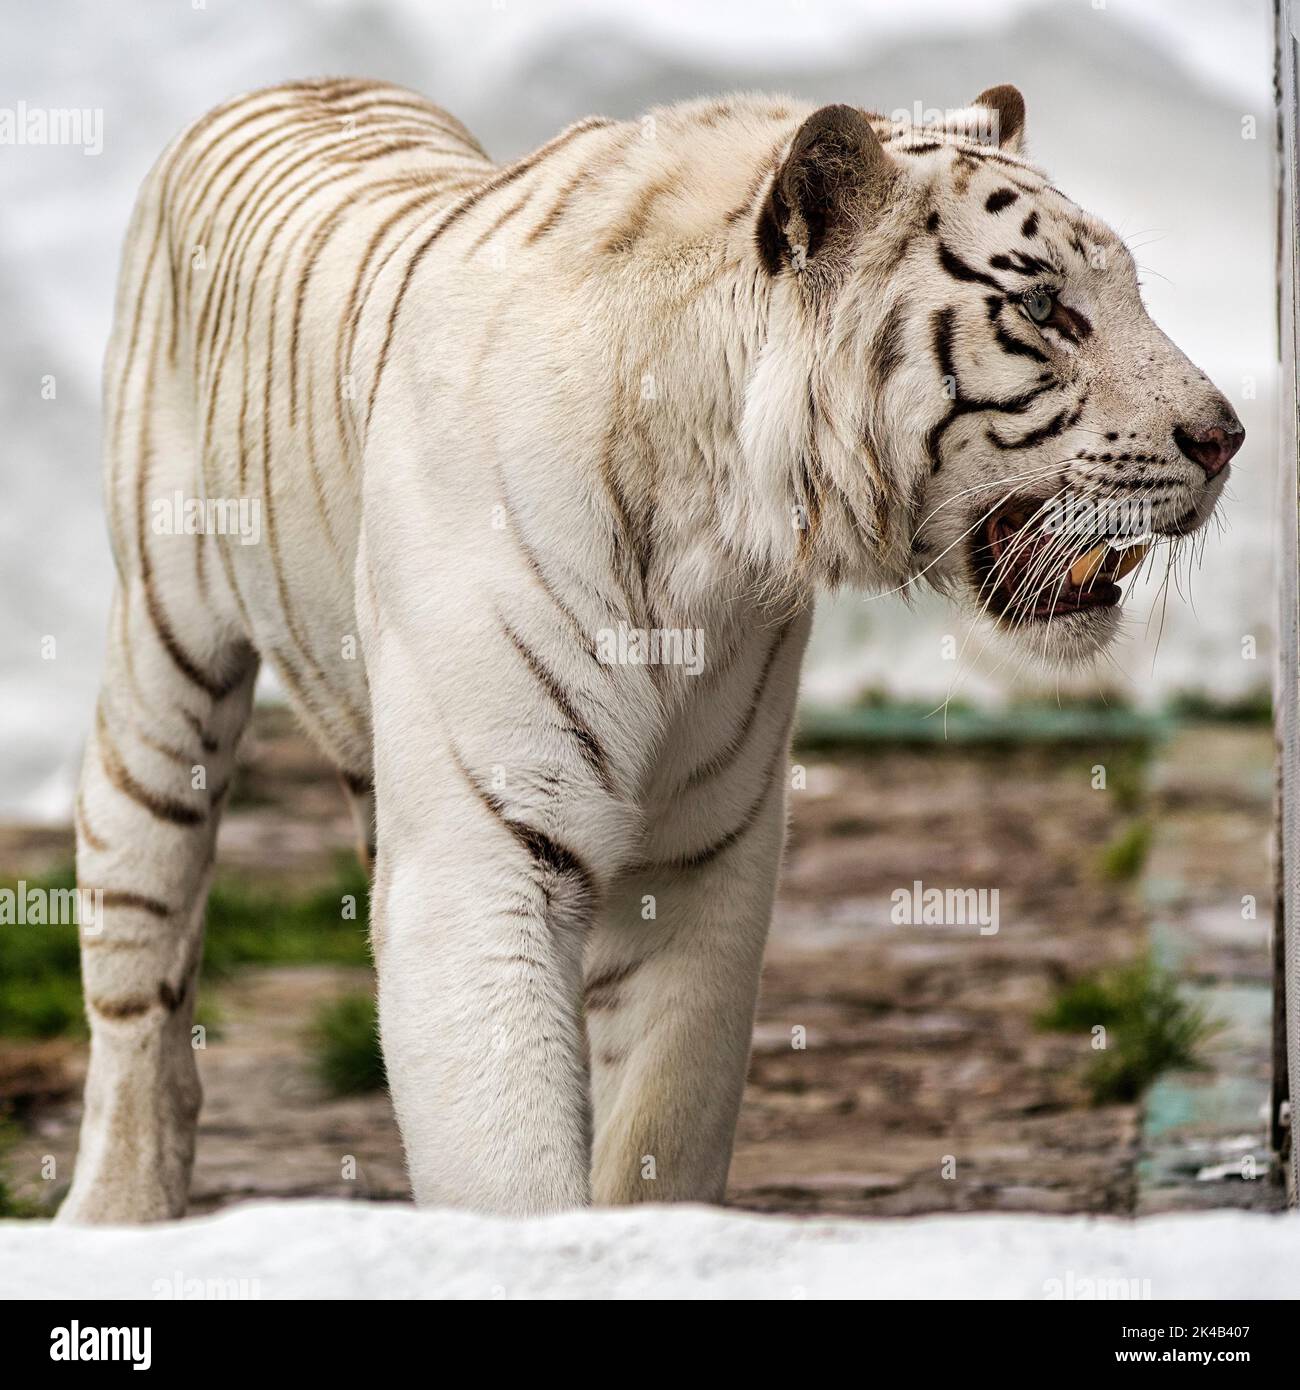 Weißer Tiger (Panthera tigris) in Gehege, Leukismus, unruhig, leicht offener Mund, gefangen Stockfoto